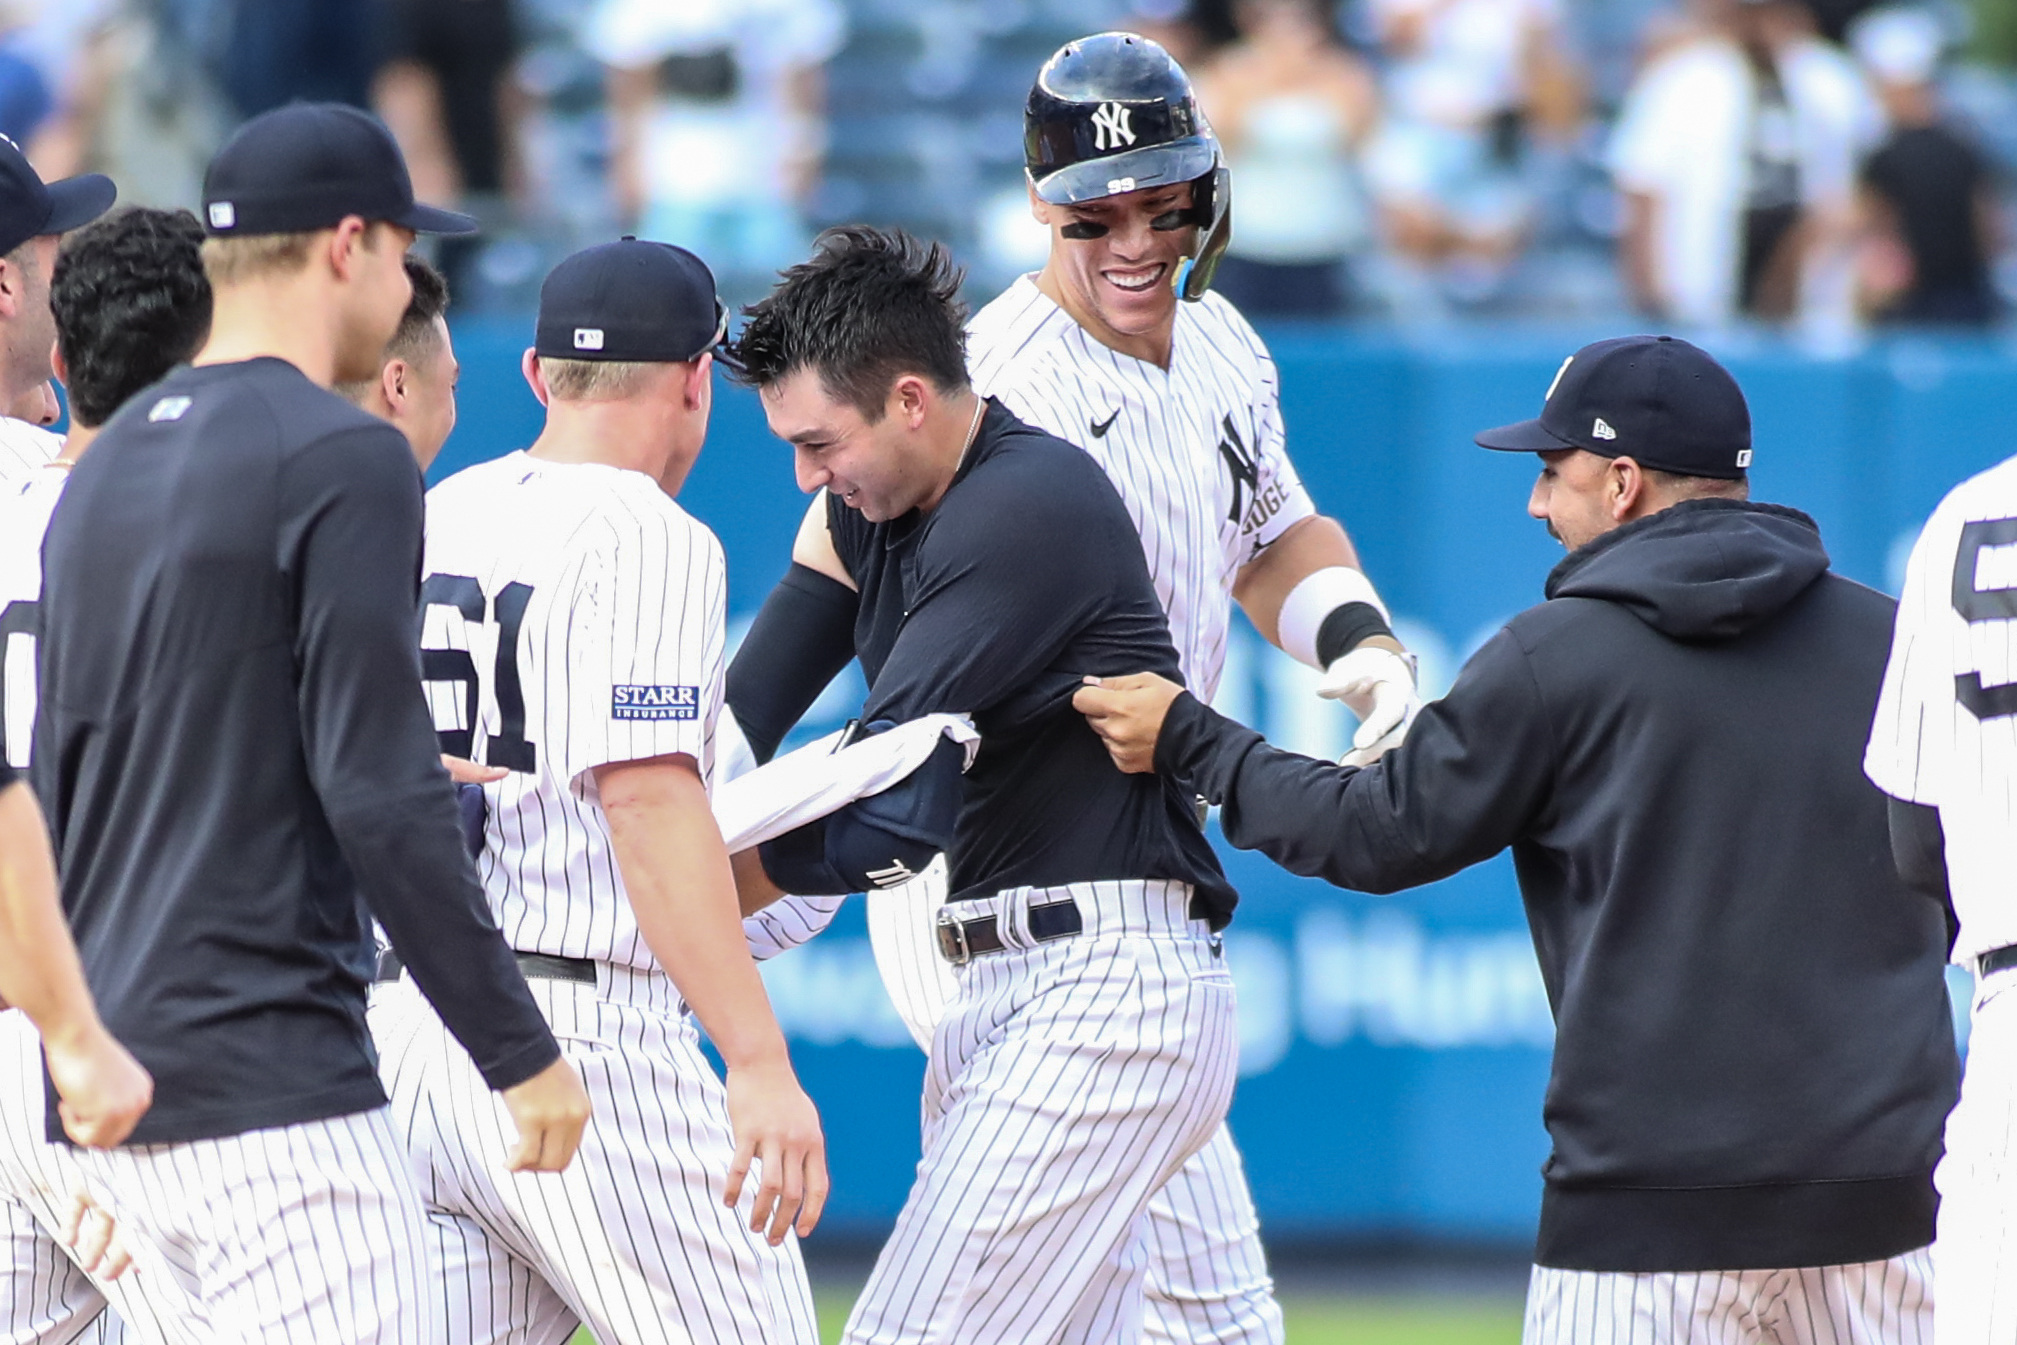 Yankees' Higashioka caps wild game with walk-off hit in 13th vs